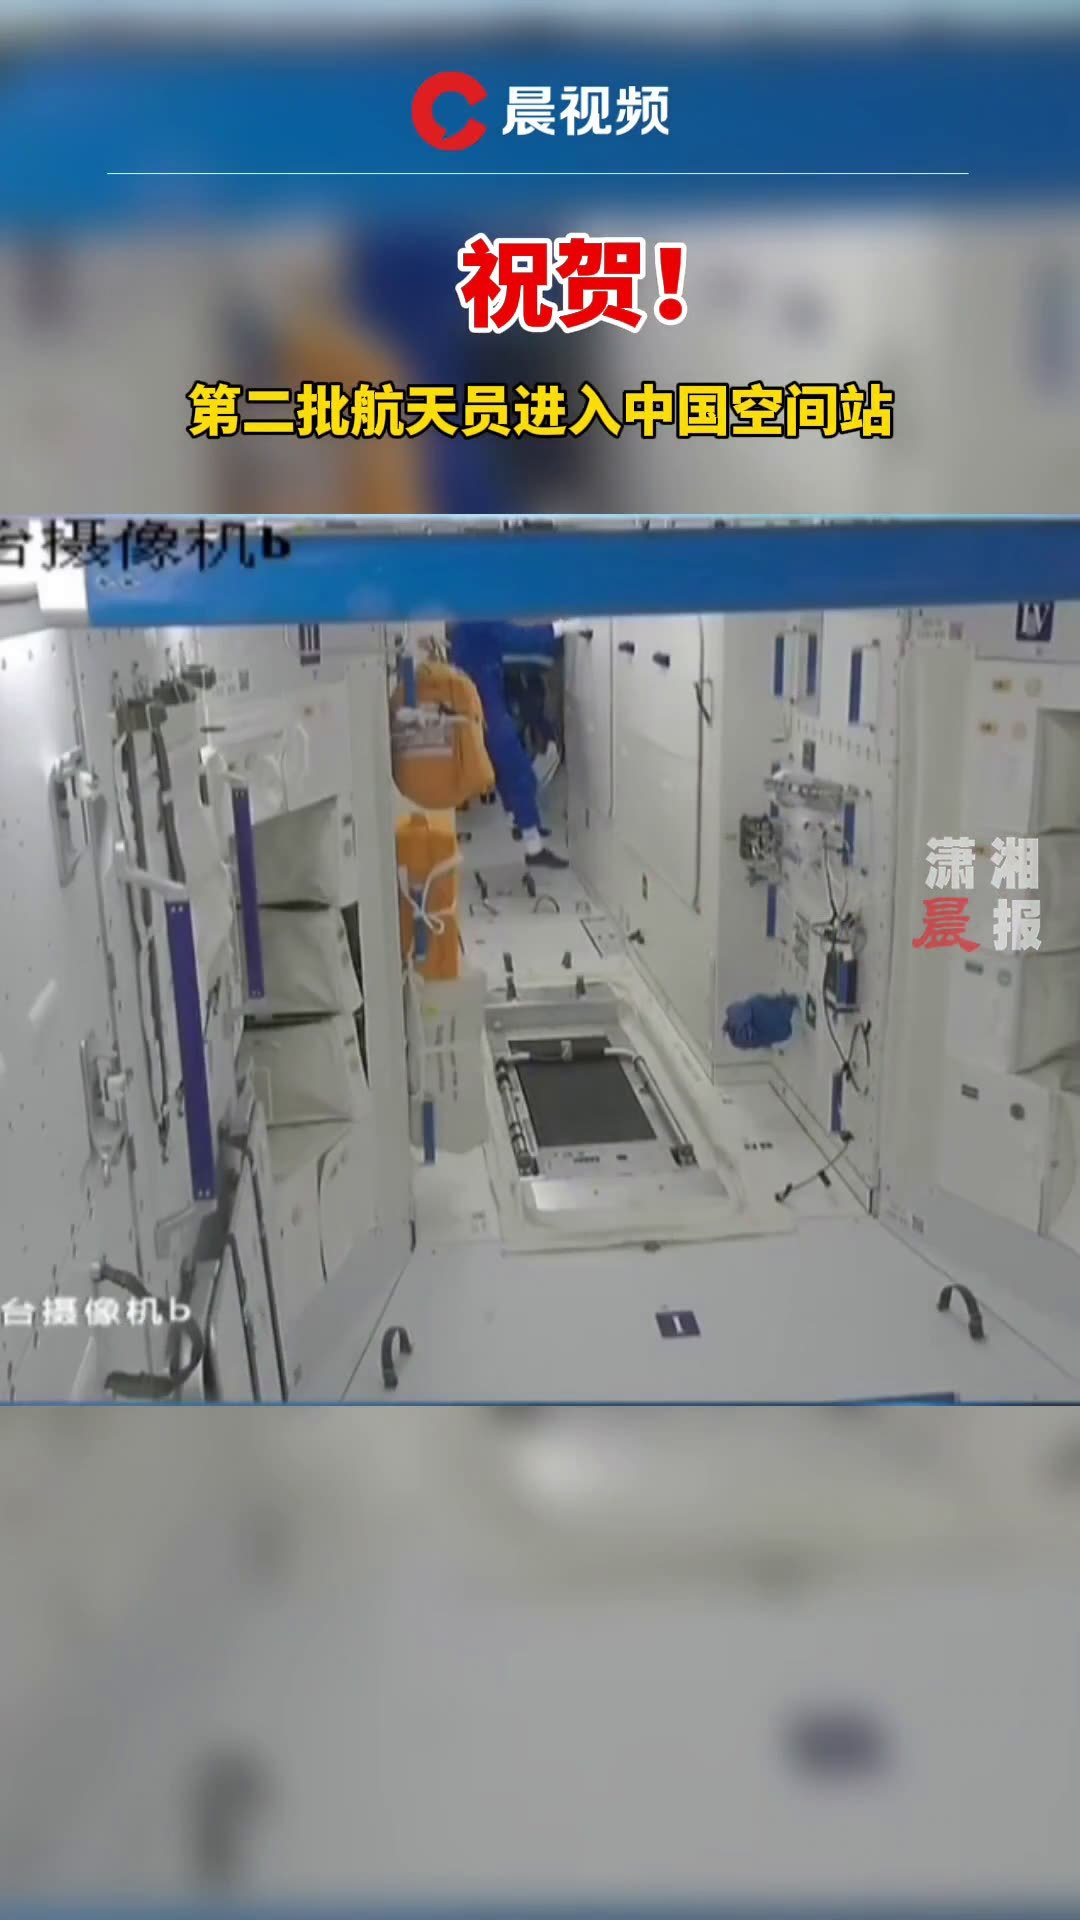 神舟十三号载人飞船与中国空间站完成对接 - 2021年10月16日, 俄罗斯卫星通讯社